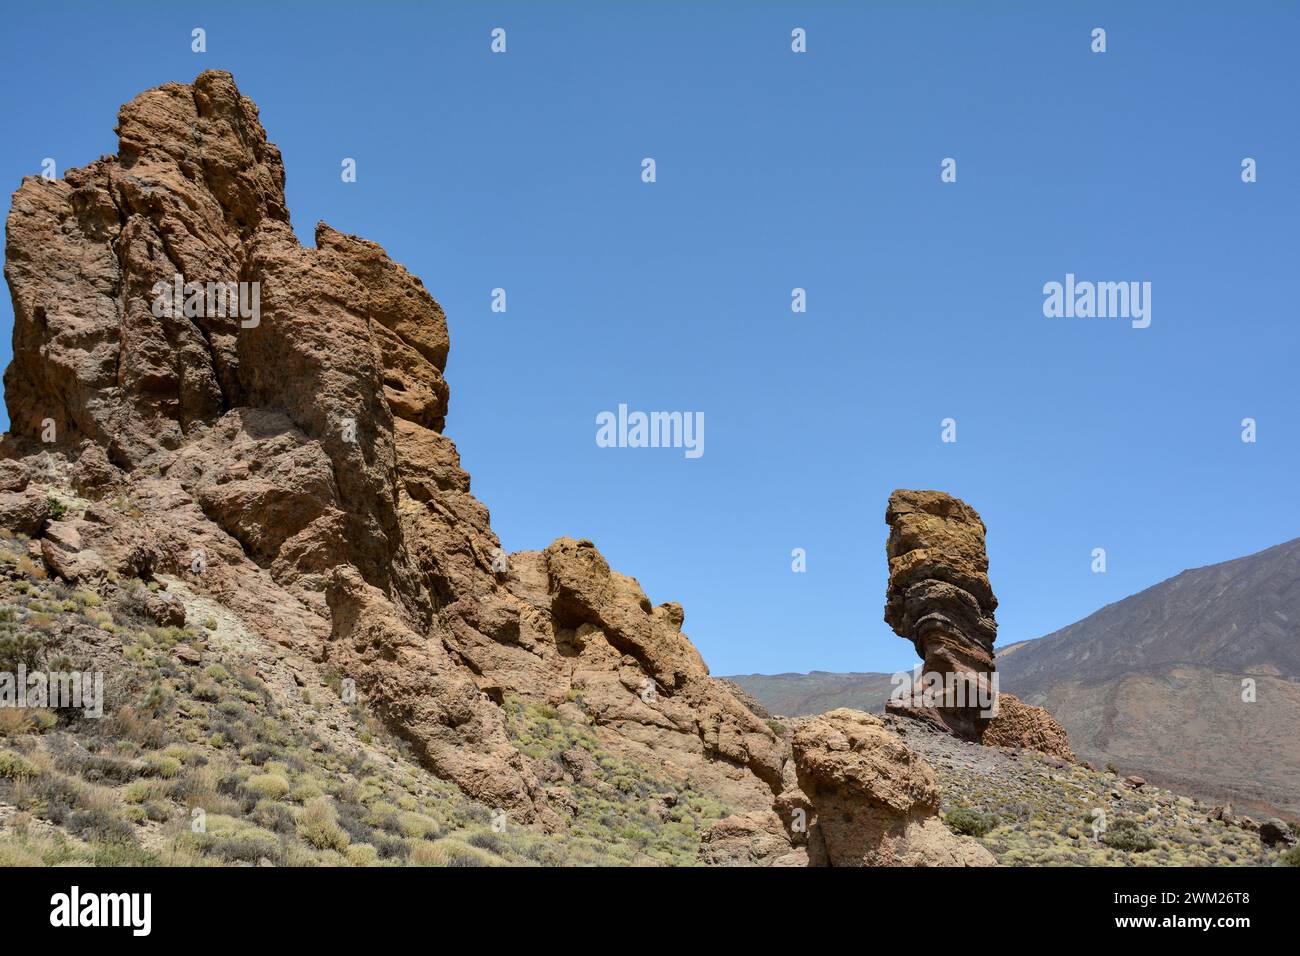 Der bizarr geformte Roque Cinchado-Felsen aus vulkanischem Gestein im Teide-Nationalpark auf der Kanarischen Insel Teneriffa, Spanien Stockfoto